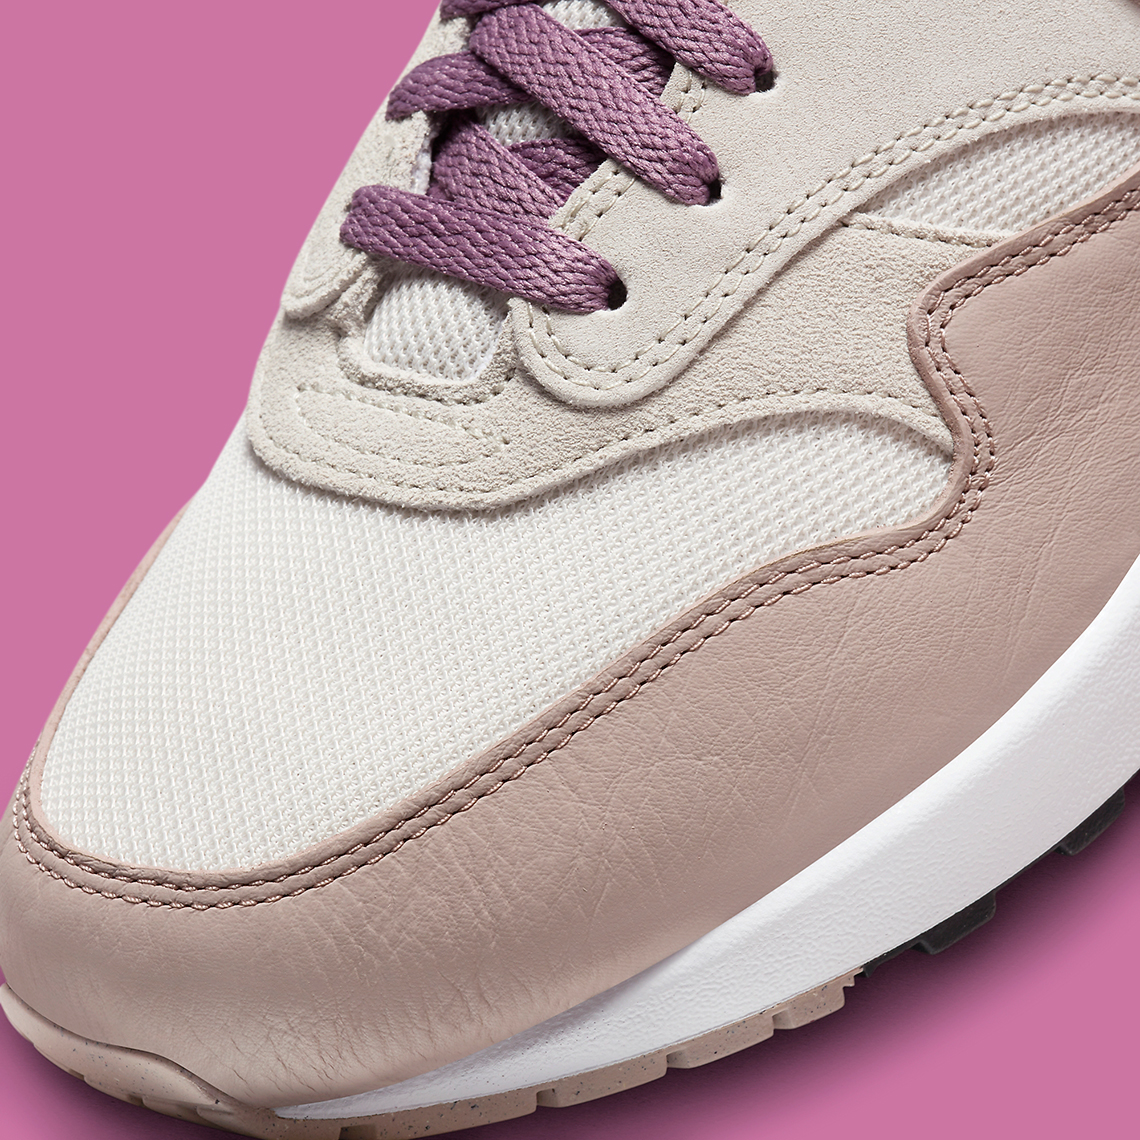 Nike Мужская обувь Cапоги и ботинки Light Bone Violet Dust Fb9660 002 Release Date 6